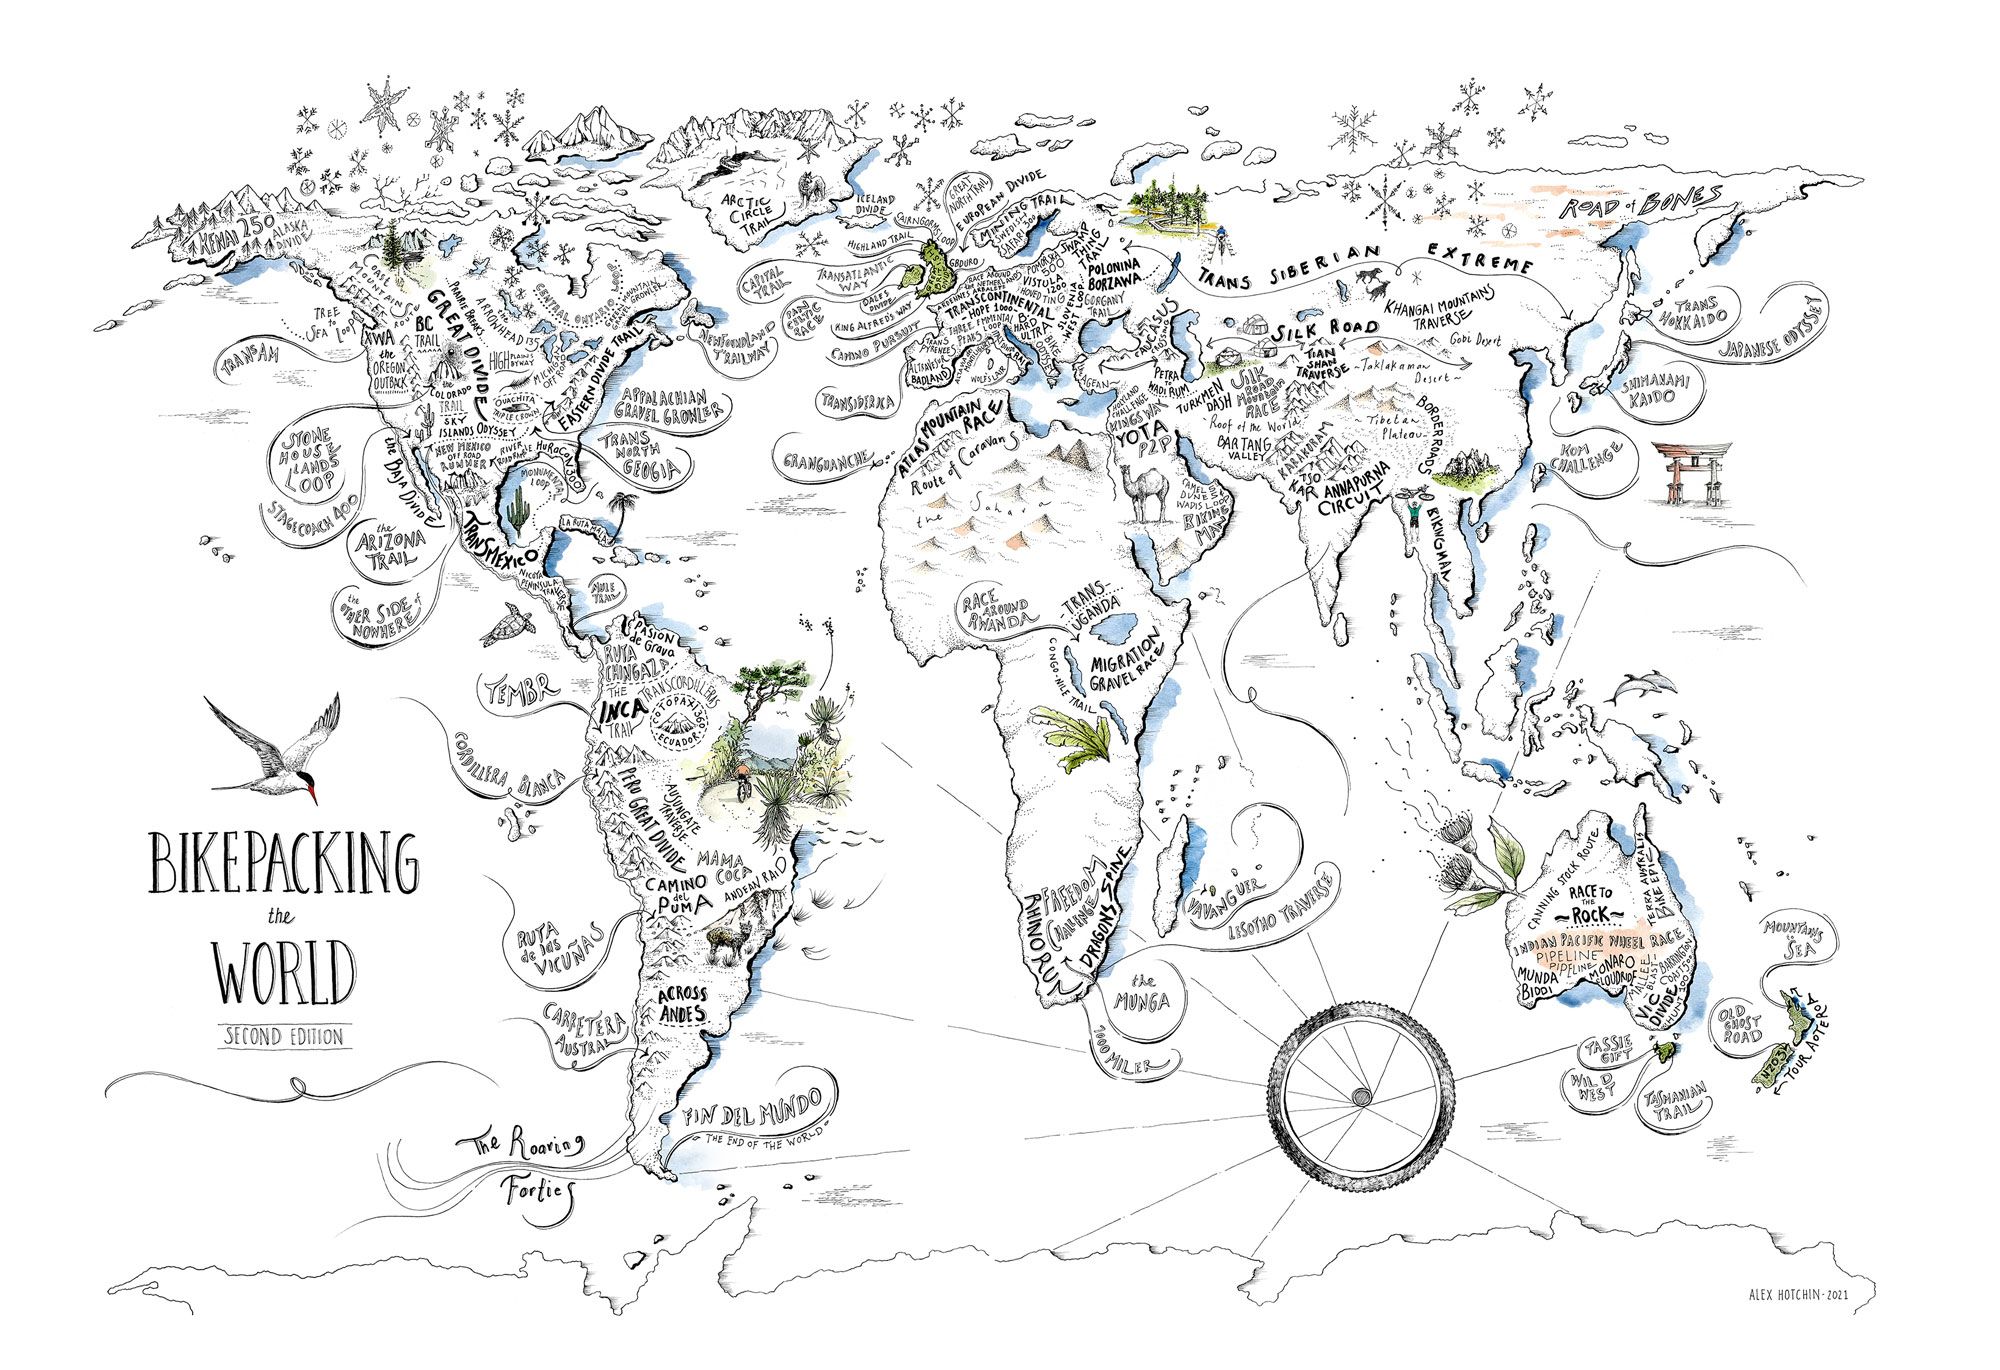 Bikepacking-the-World-map_0.jpg